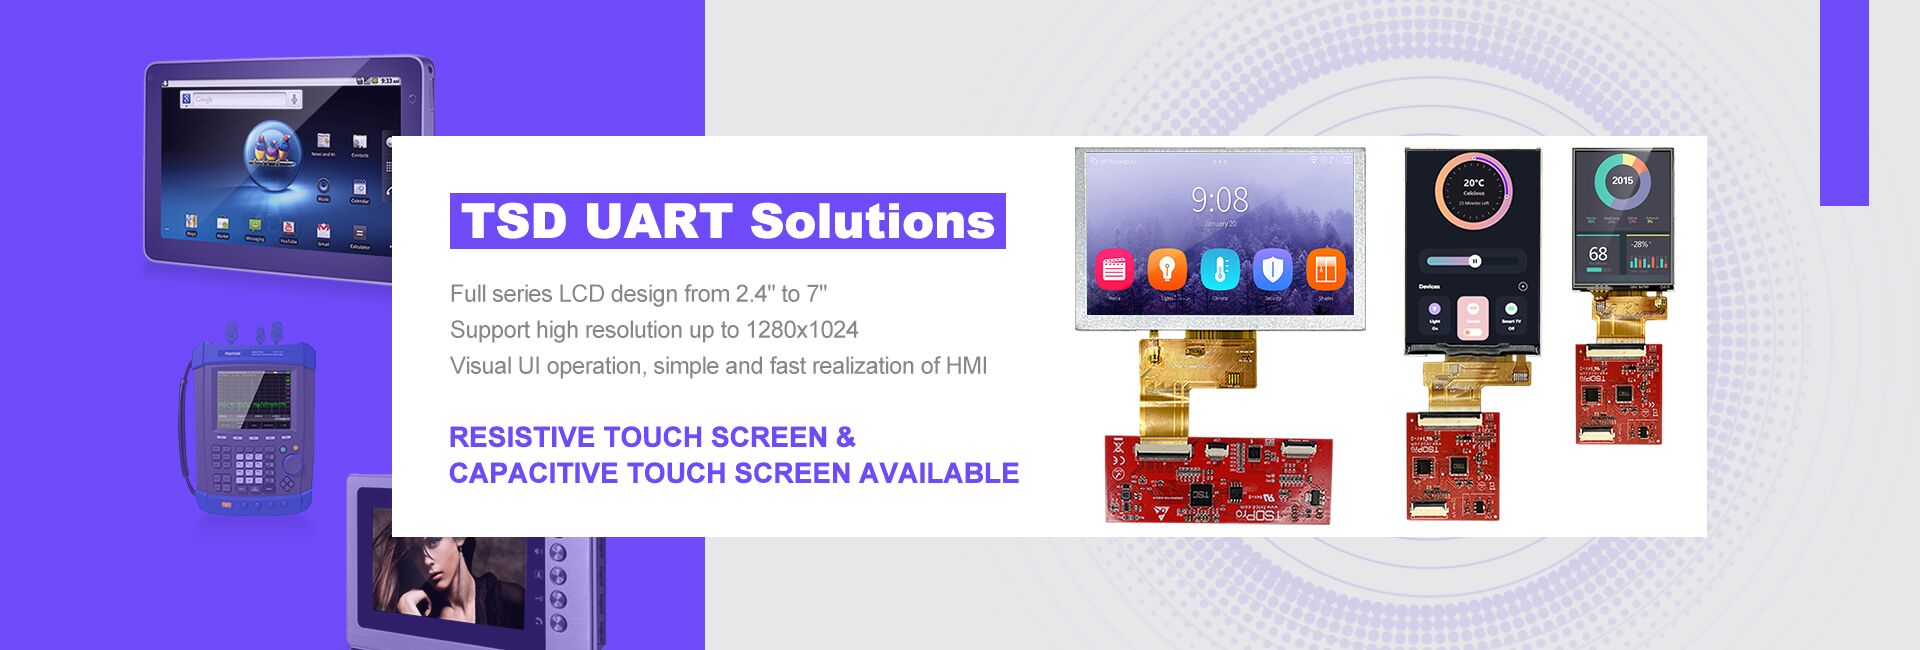 ¡La solución de pantalla LCD TSD Pro UART ya está disponible!
